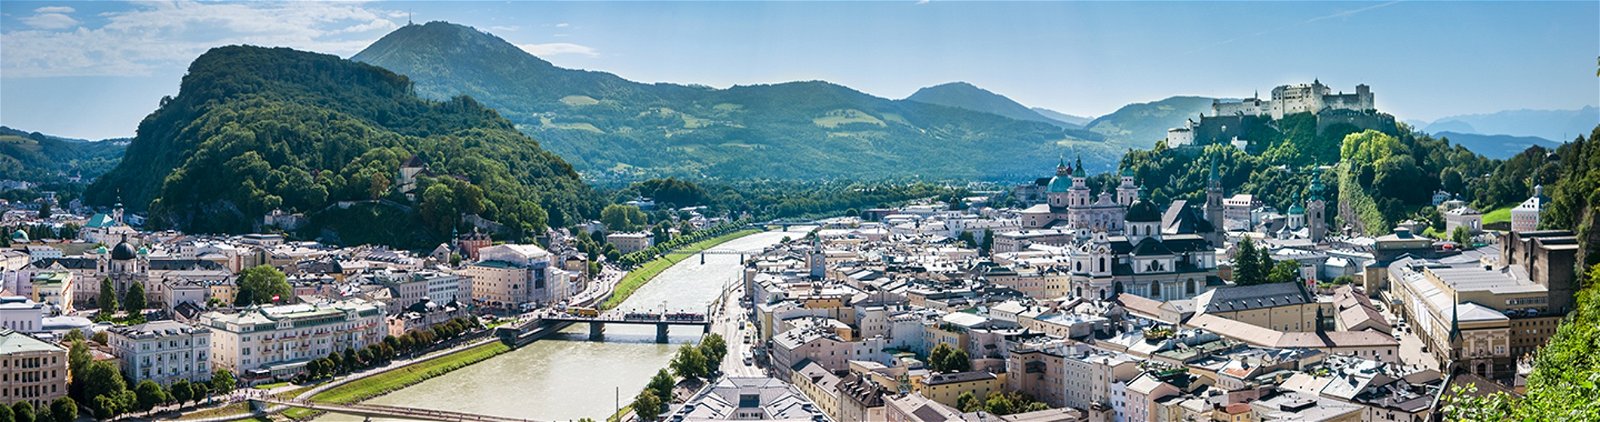 Weekendje weg in Salzburg